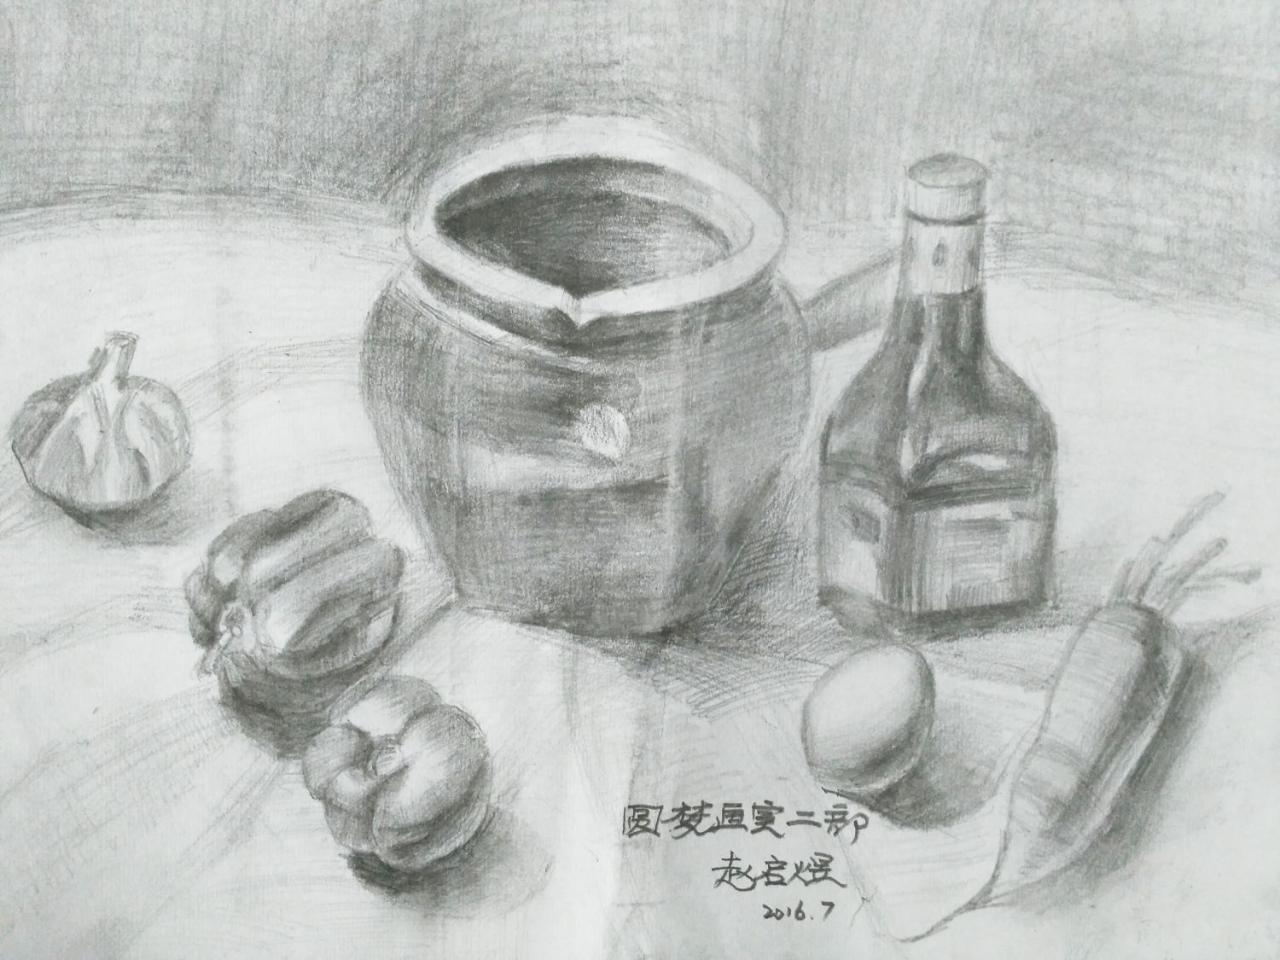 陶罐、酒瓶、青椒、蒜、萝卜、鸡蛋 静物素描 赵启煜画